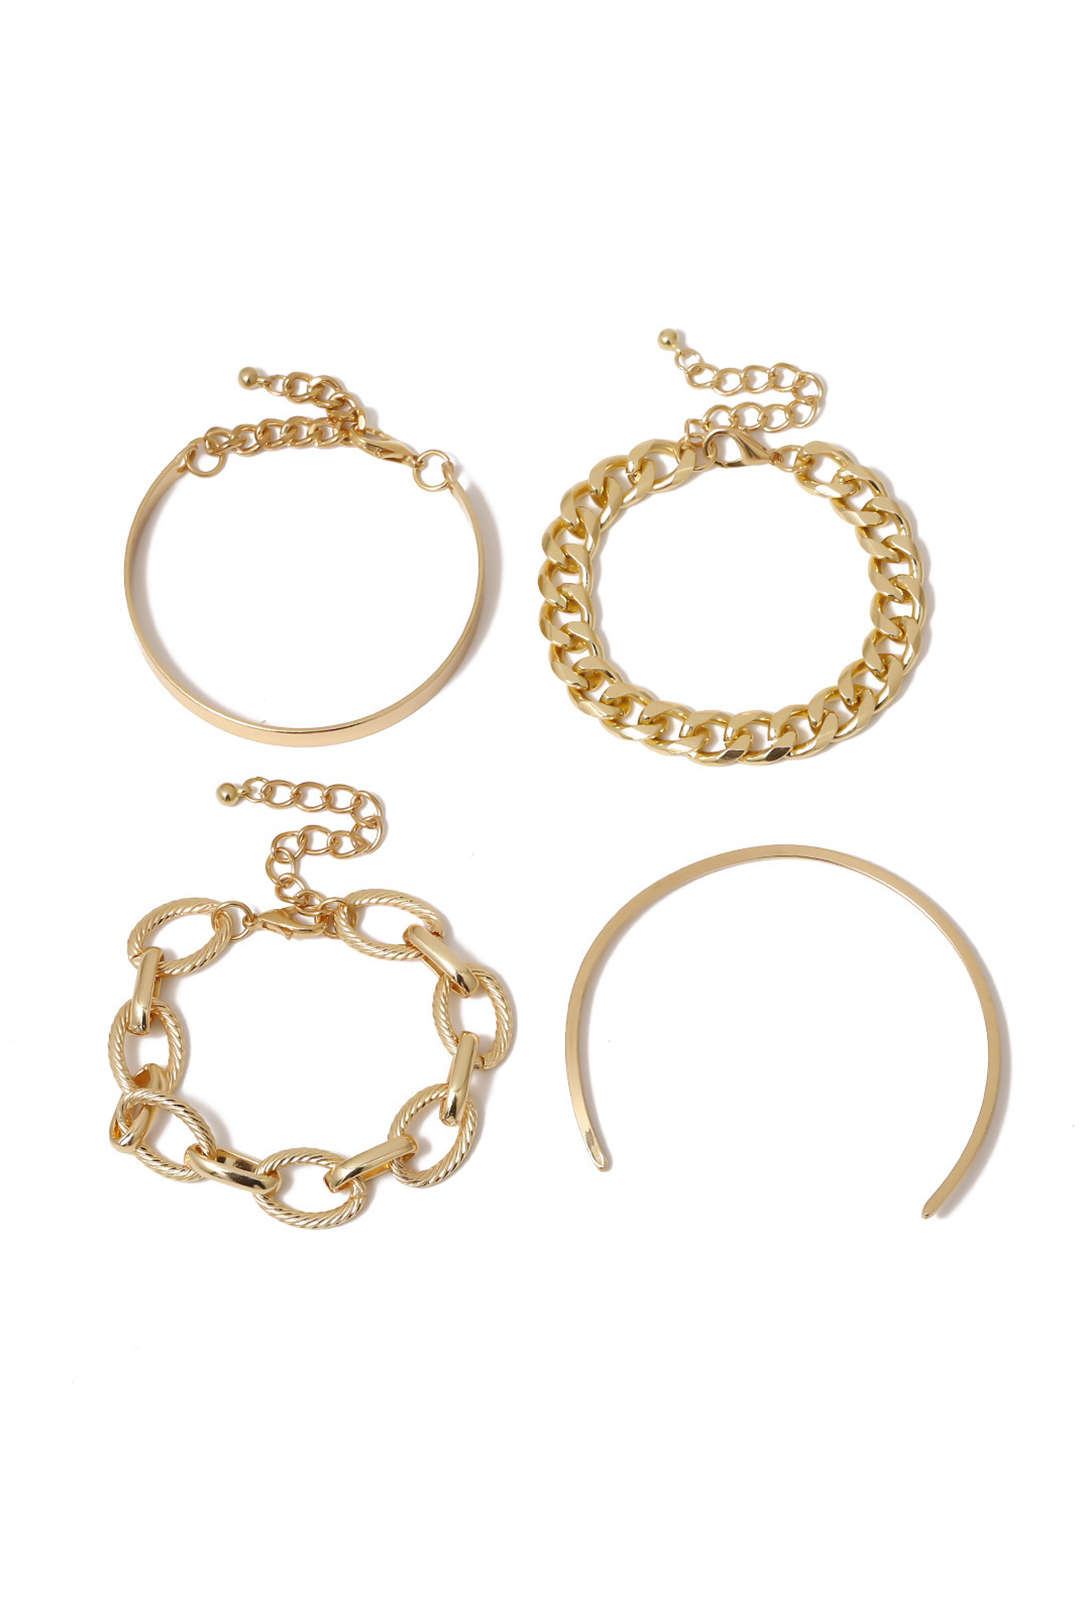 4pc Metal Chain Bracelet Set